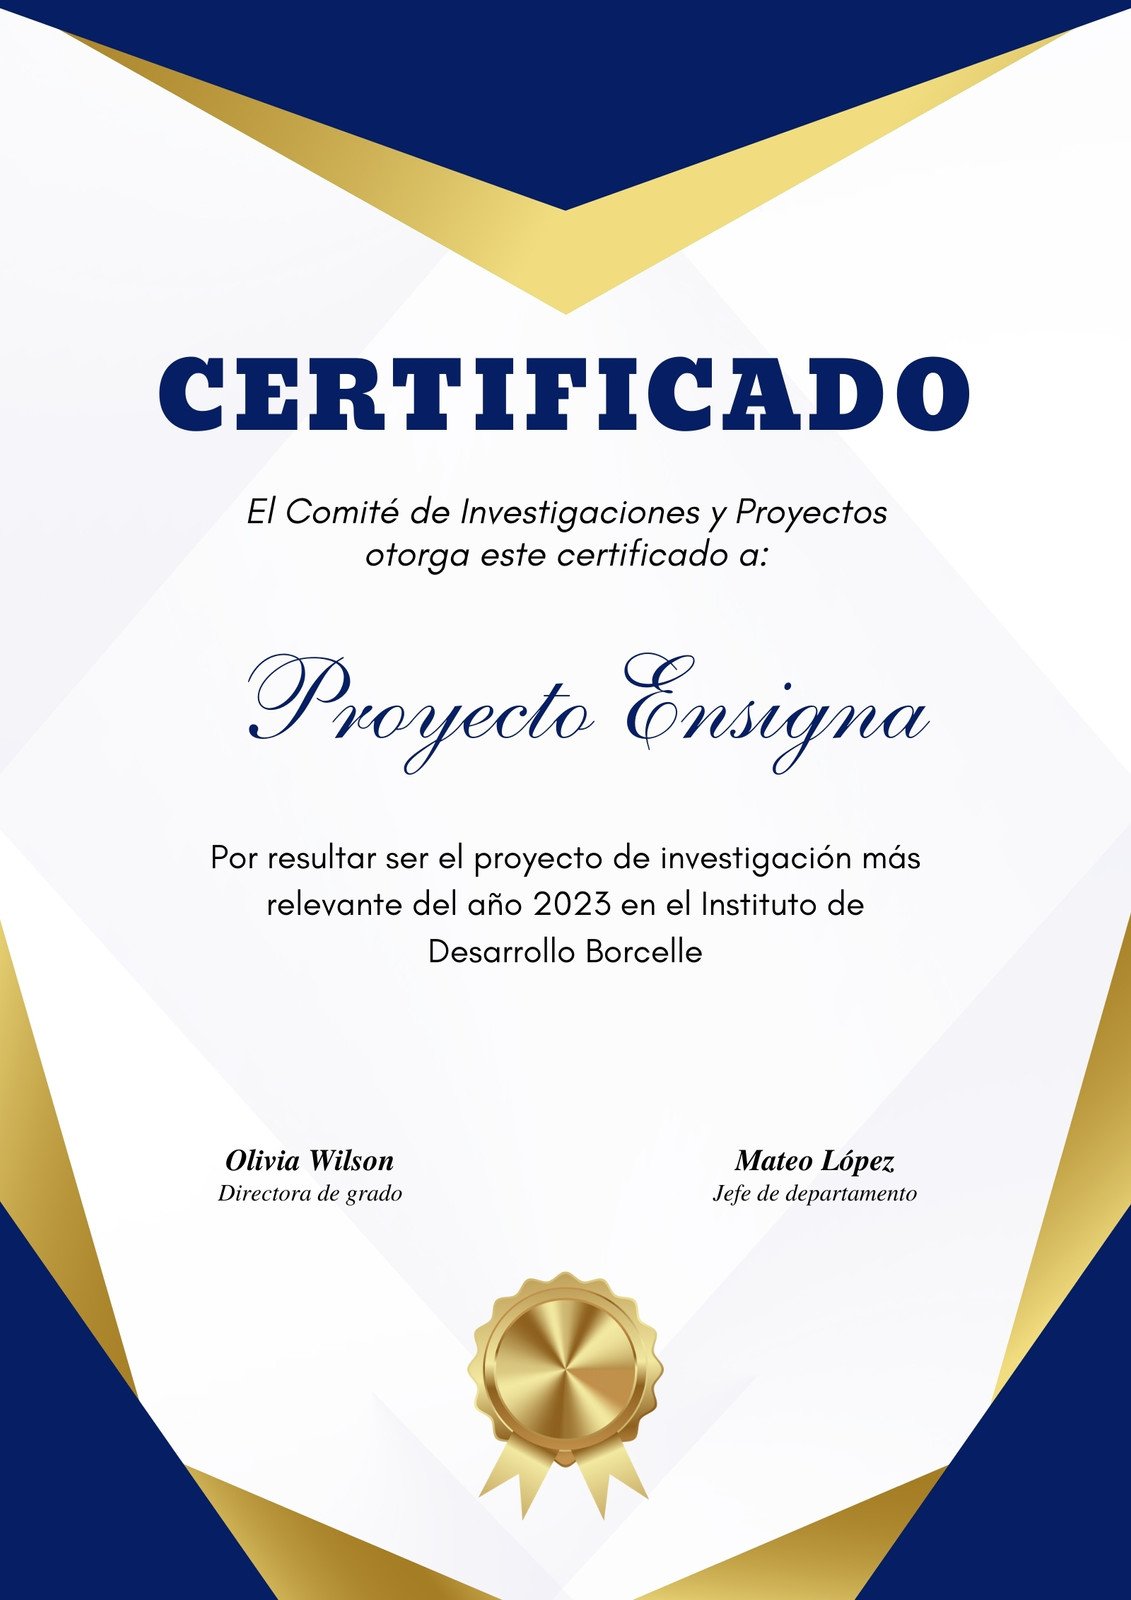 Certificado Vertical Premio Diploma Reconocimiento Proyecto Participación Clásico Elegante Profesional Azul Dorado y Blanco